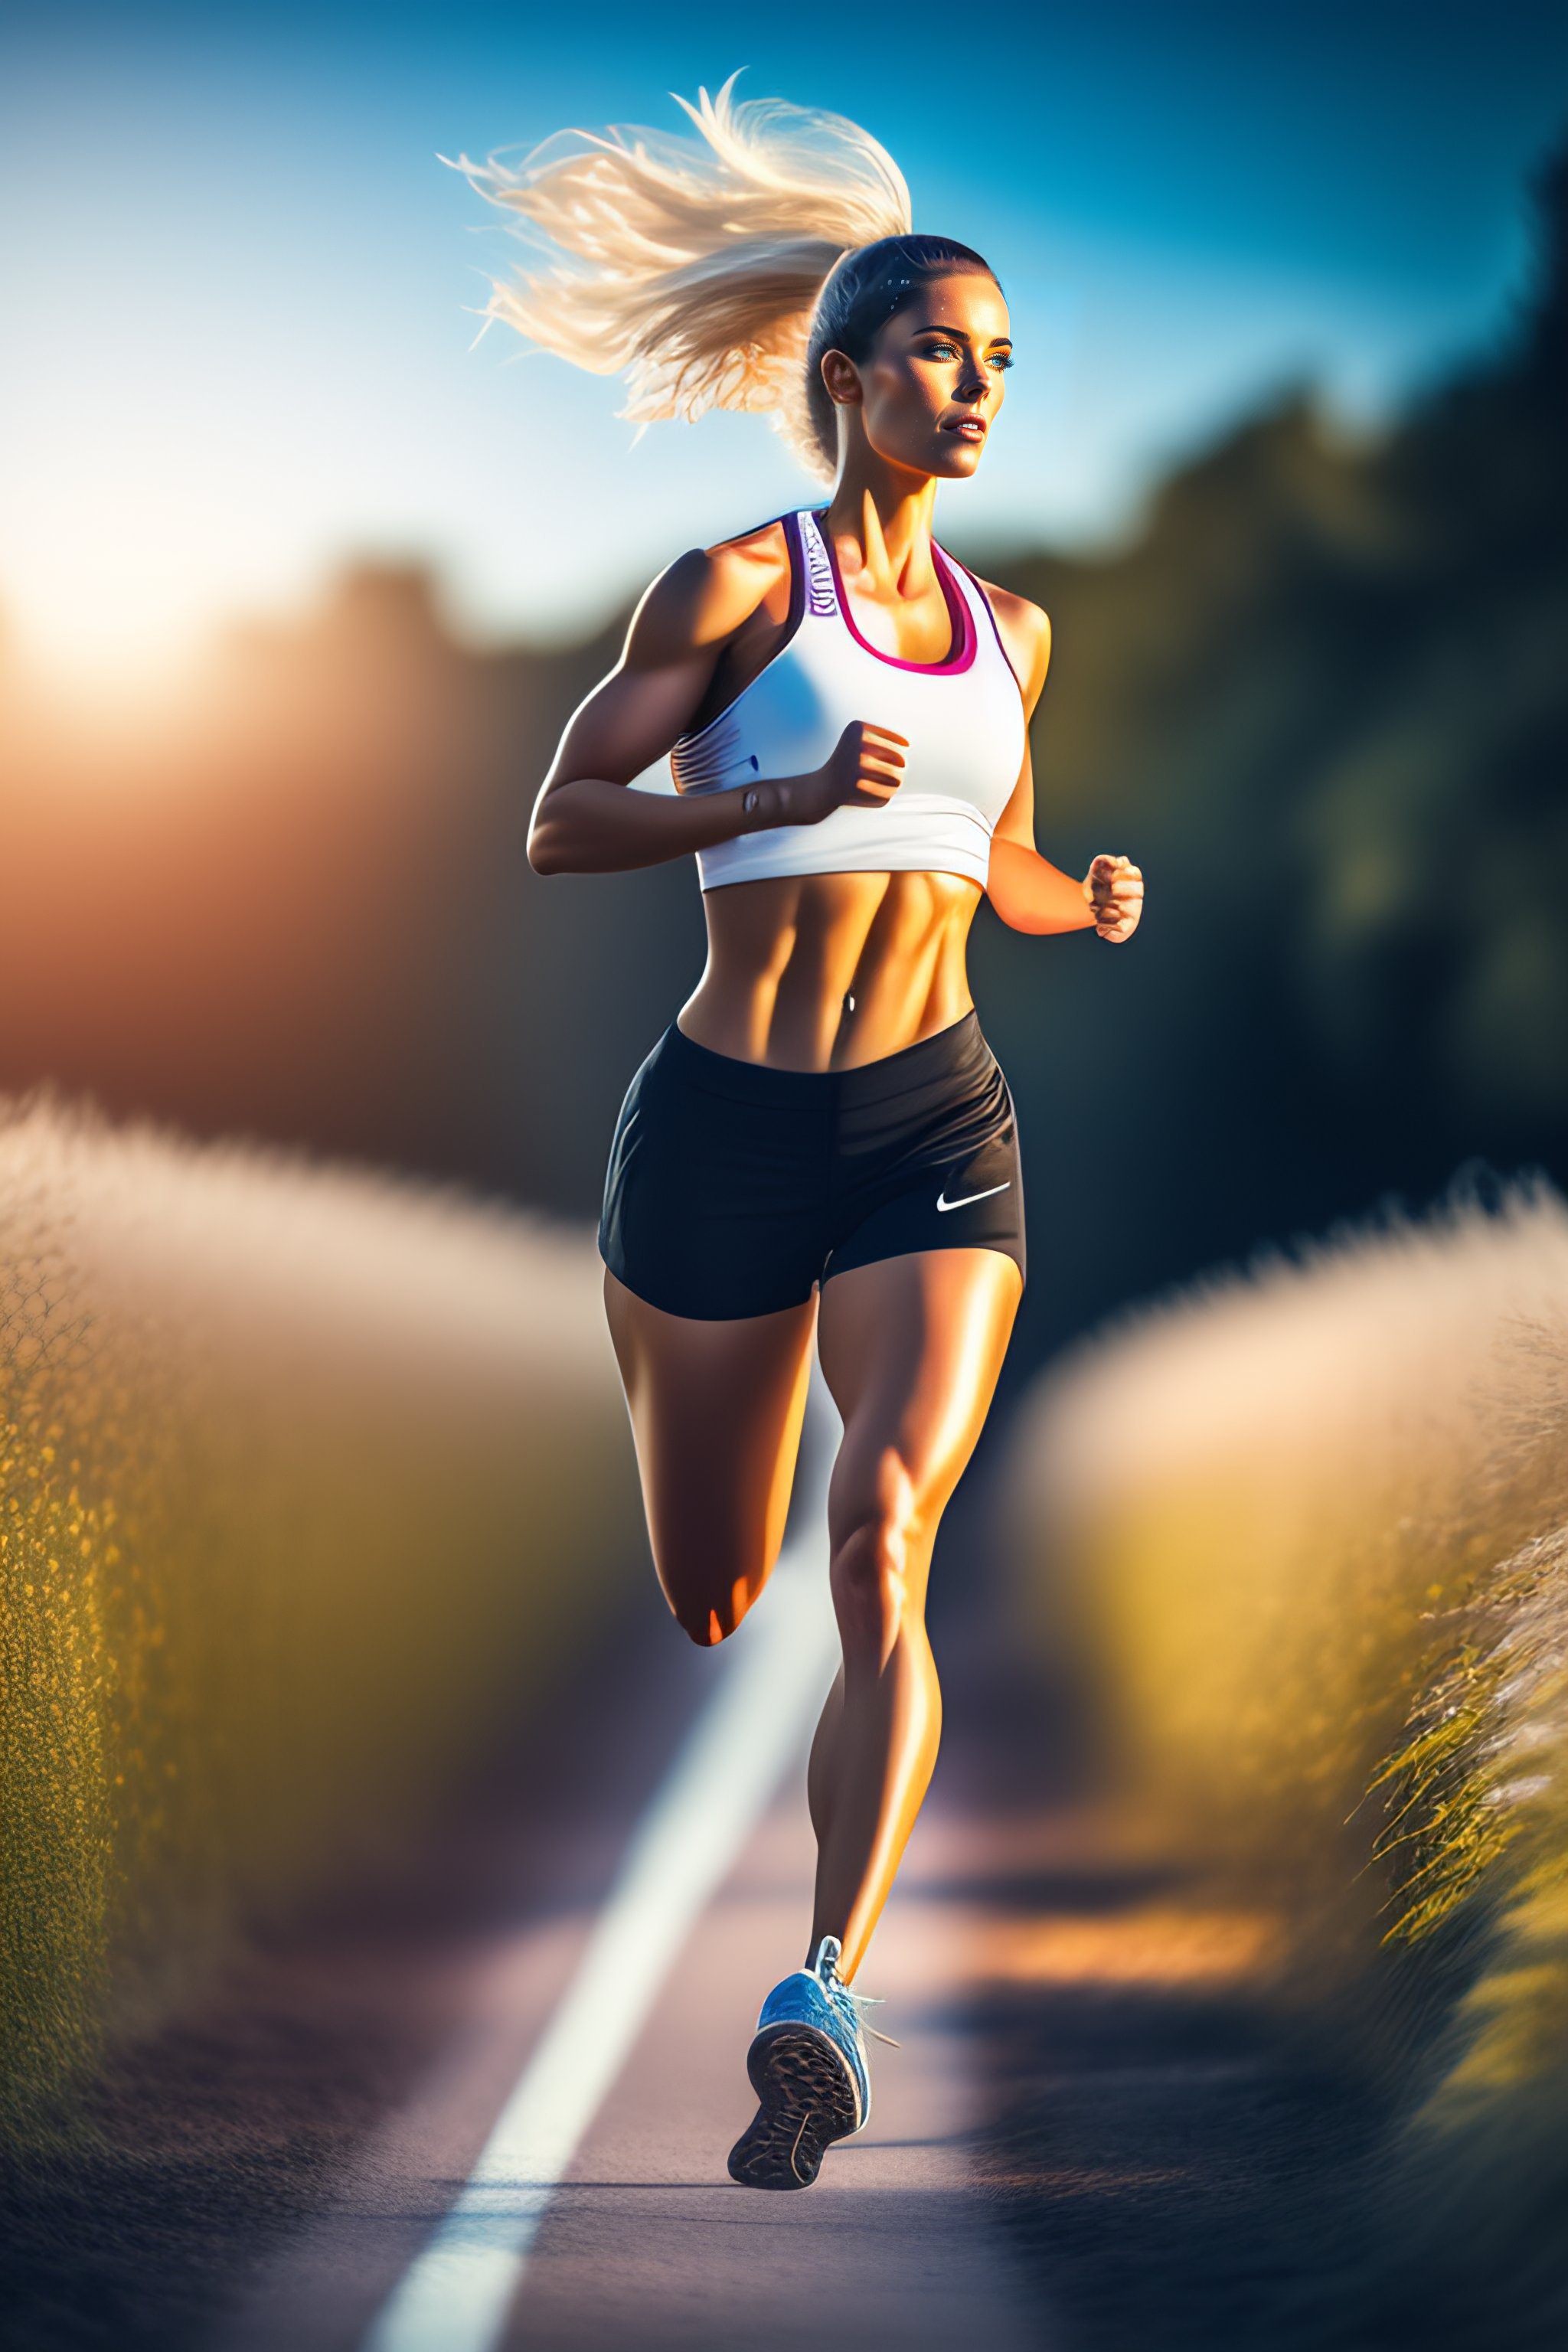 Lexica - Wide angle white skinned fitness girl goddess running